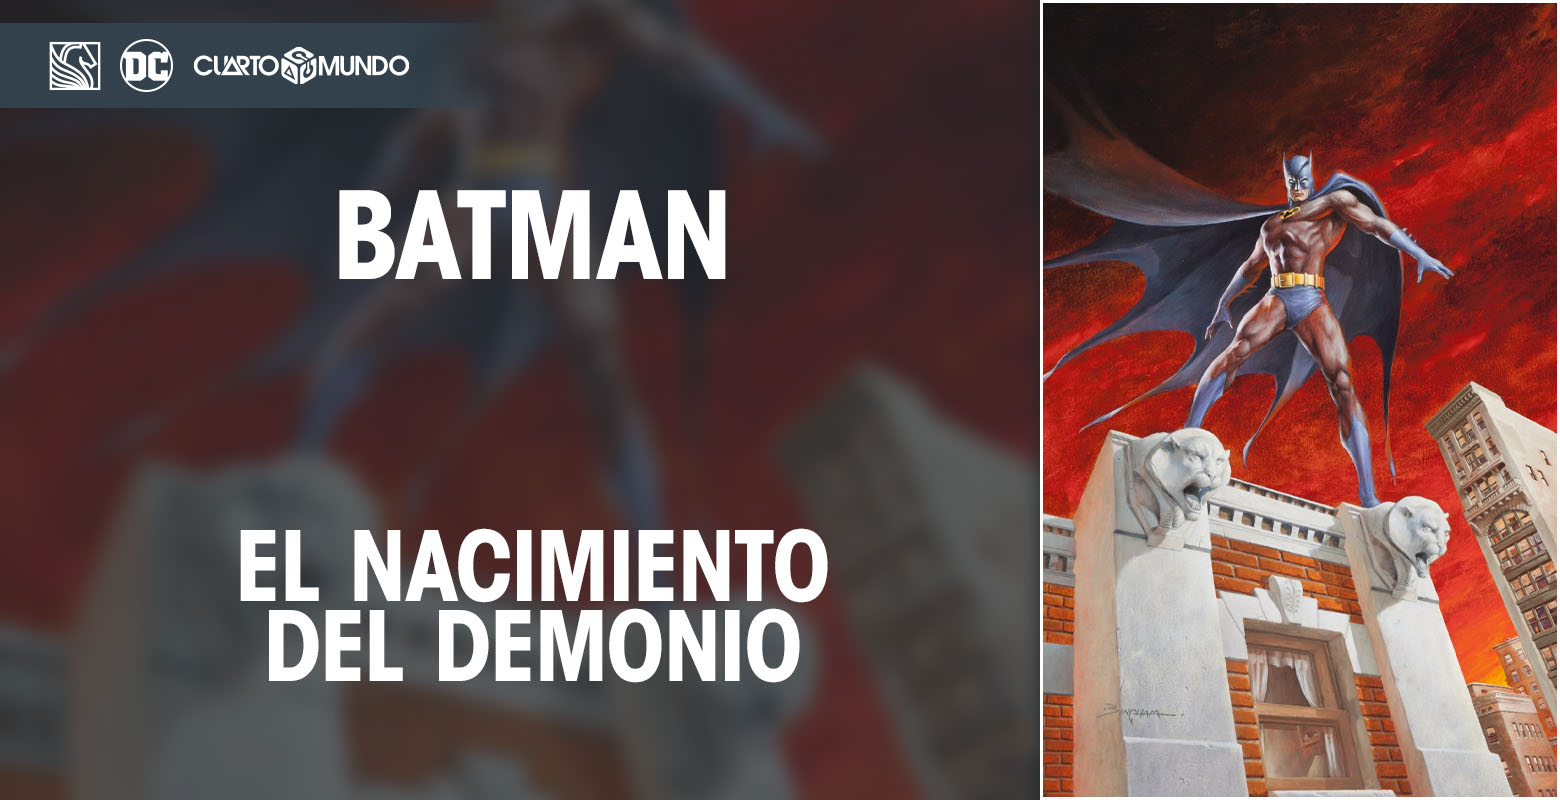 DC Salvat - Batman: El Nacimiento del Demonio • Cuarto Mundo